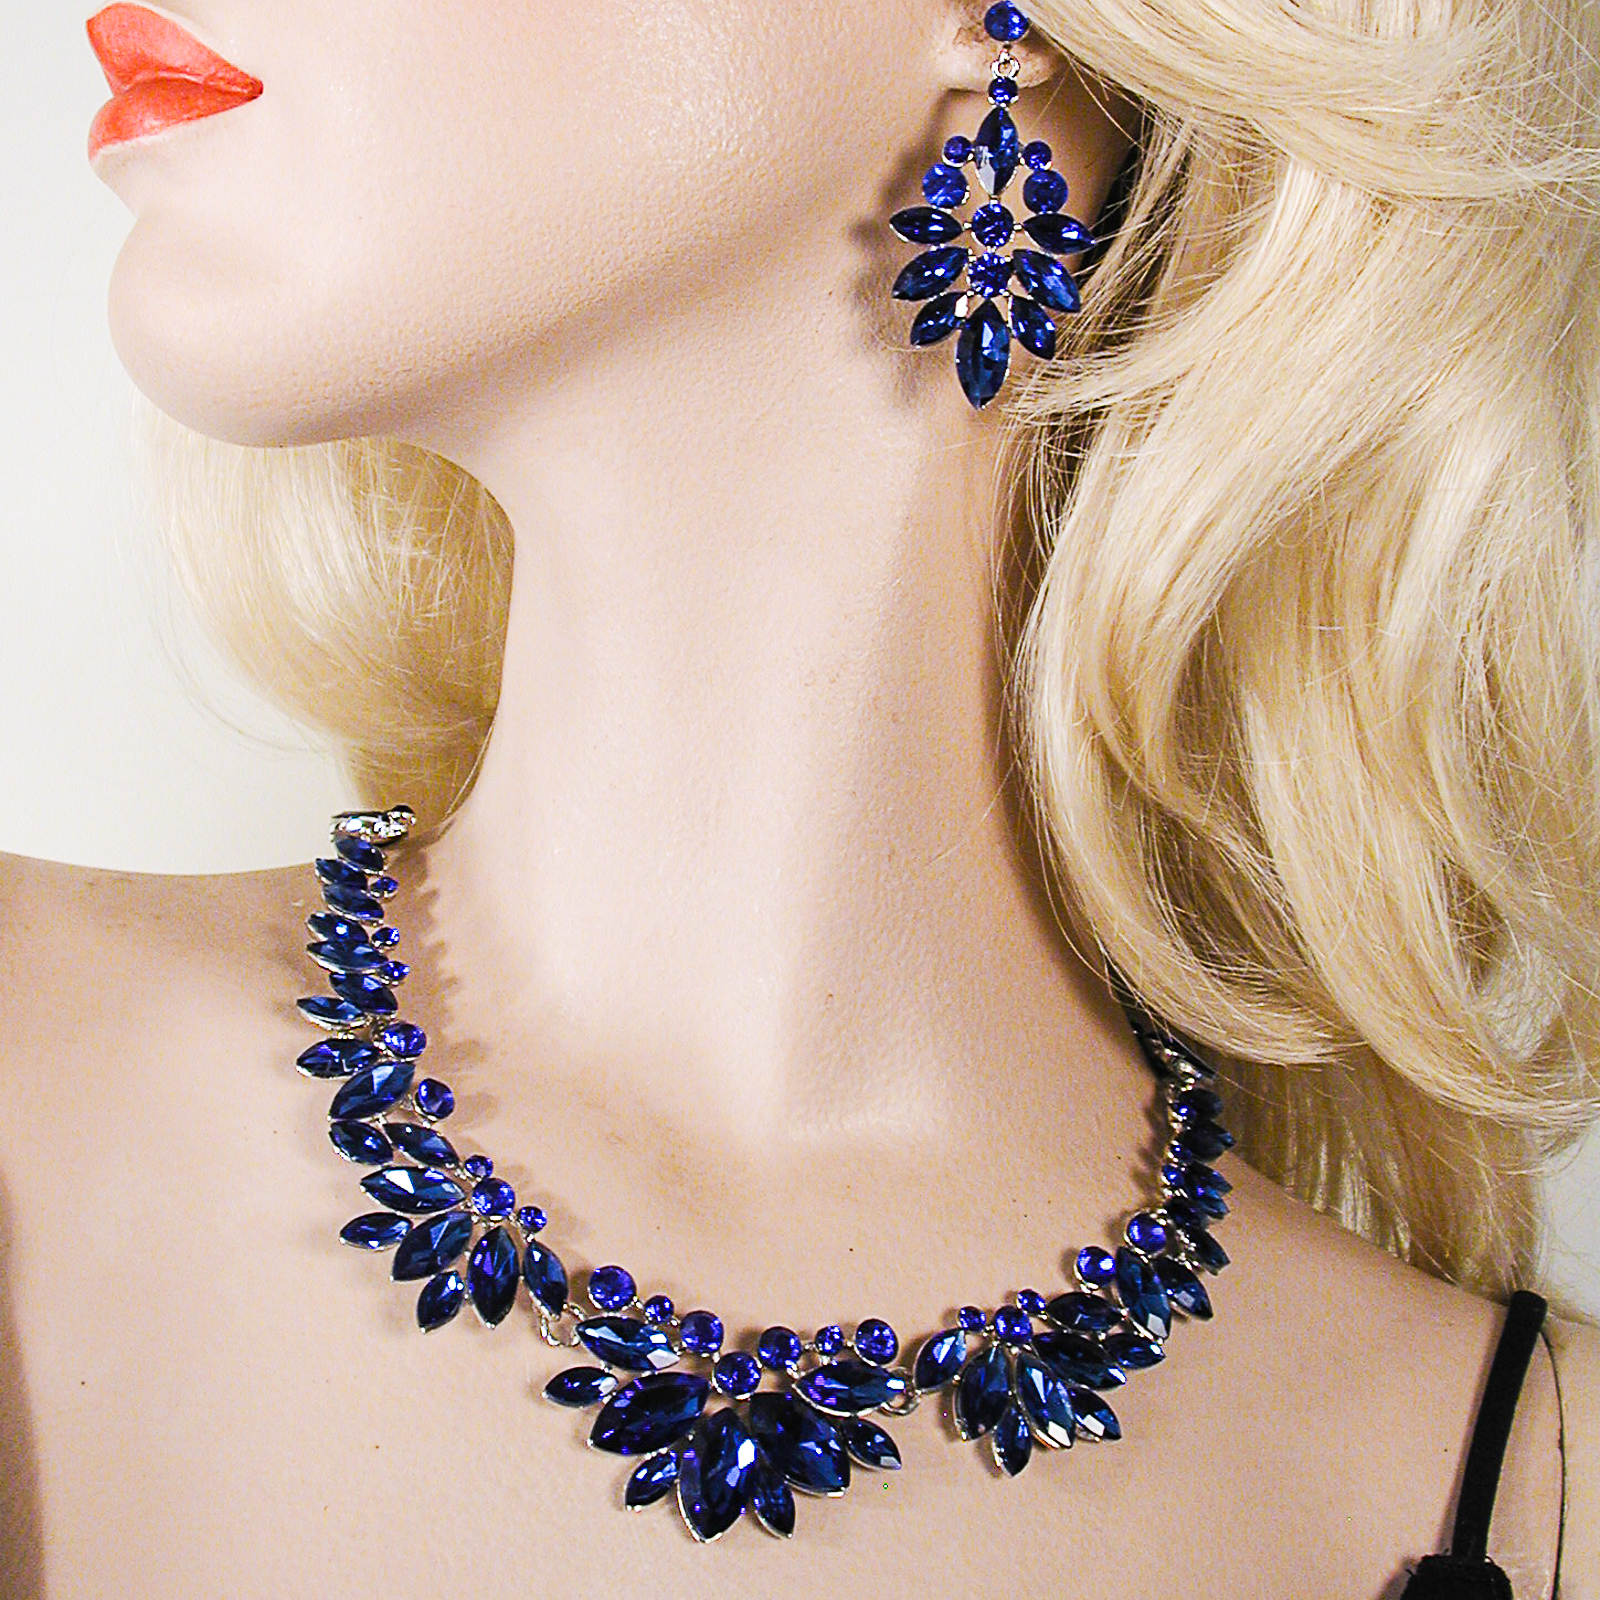 Hinged Segment Fan Crystal Rhinestone Necklace, a fashion accessorie - Evening Elegance